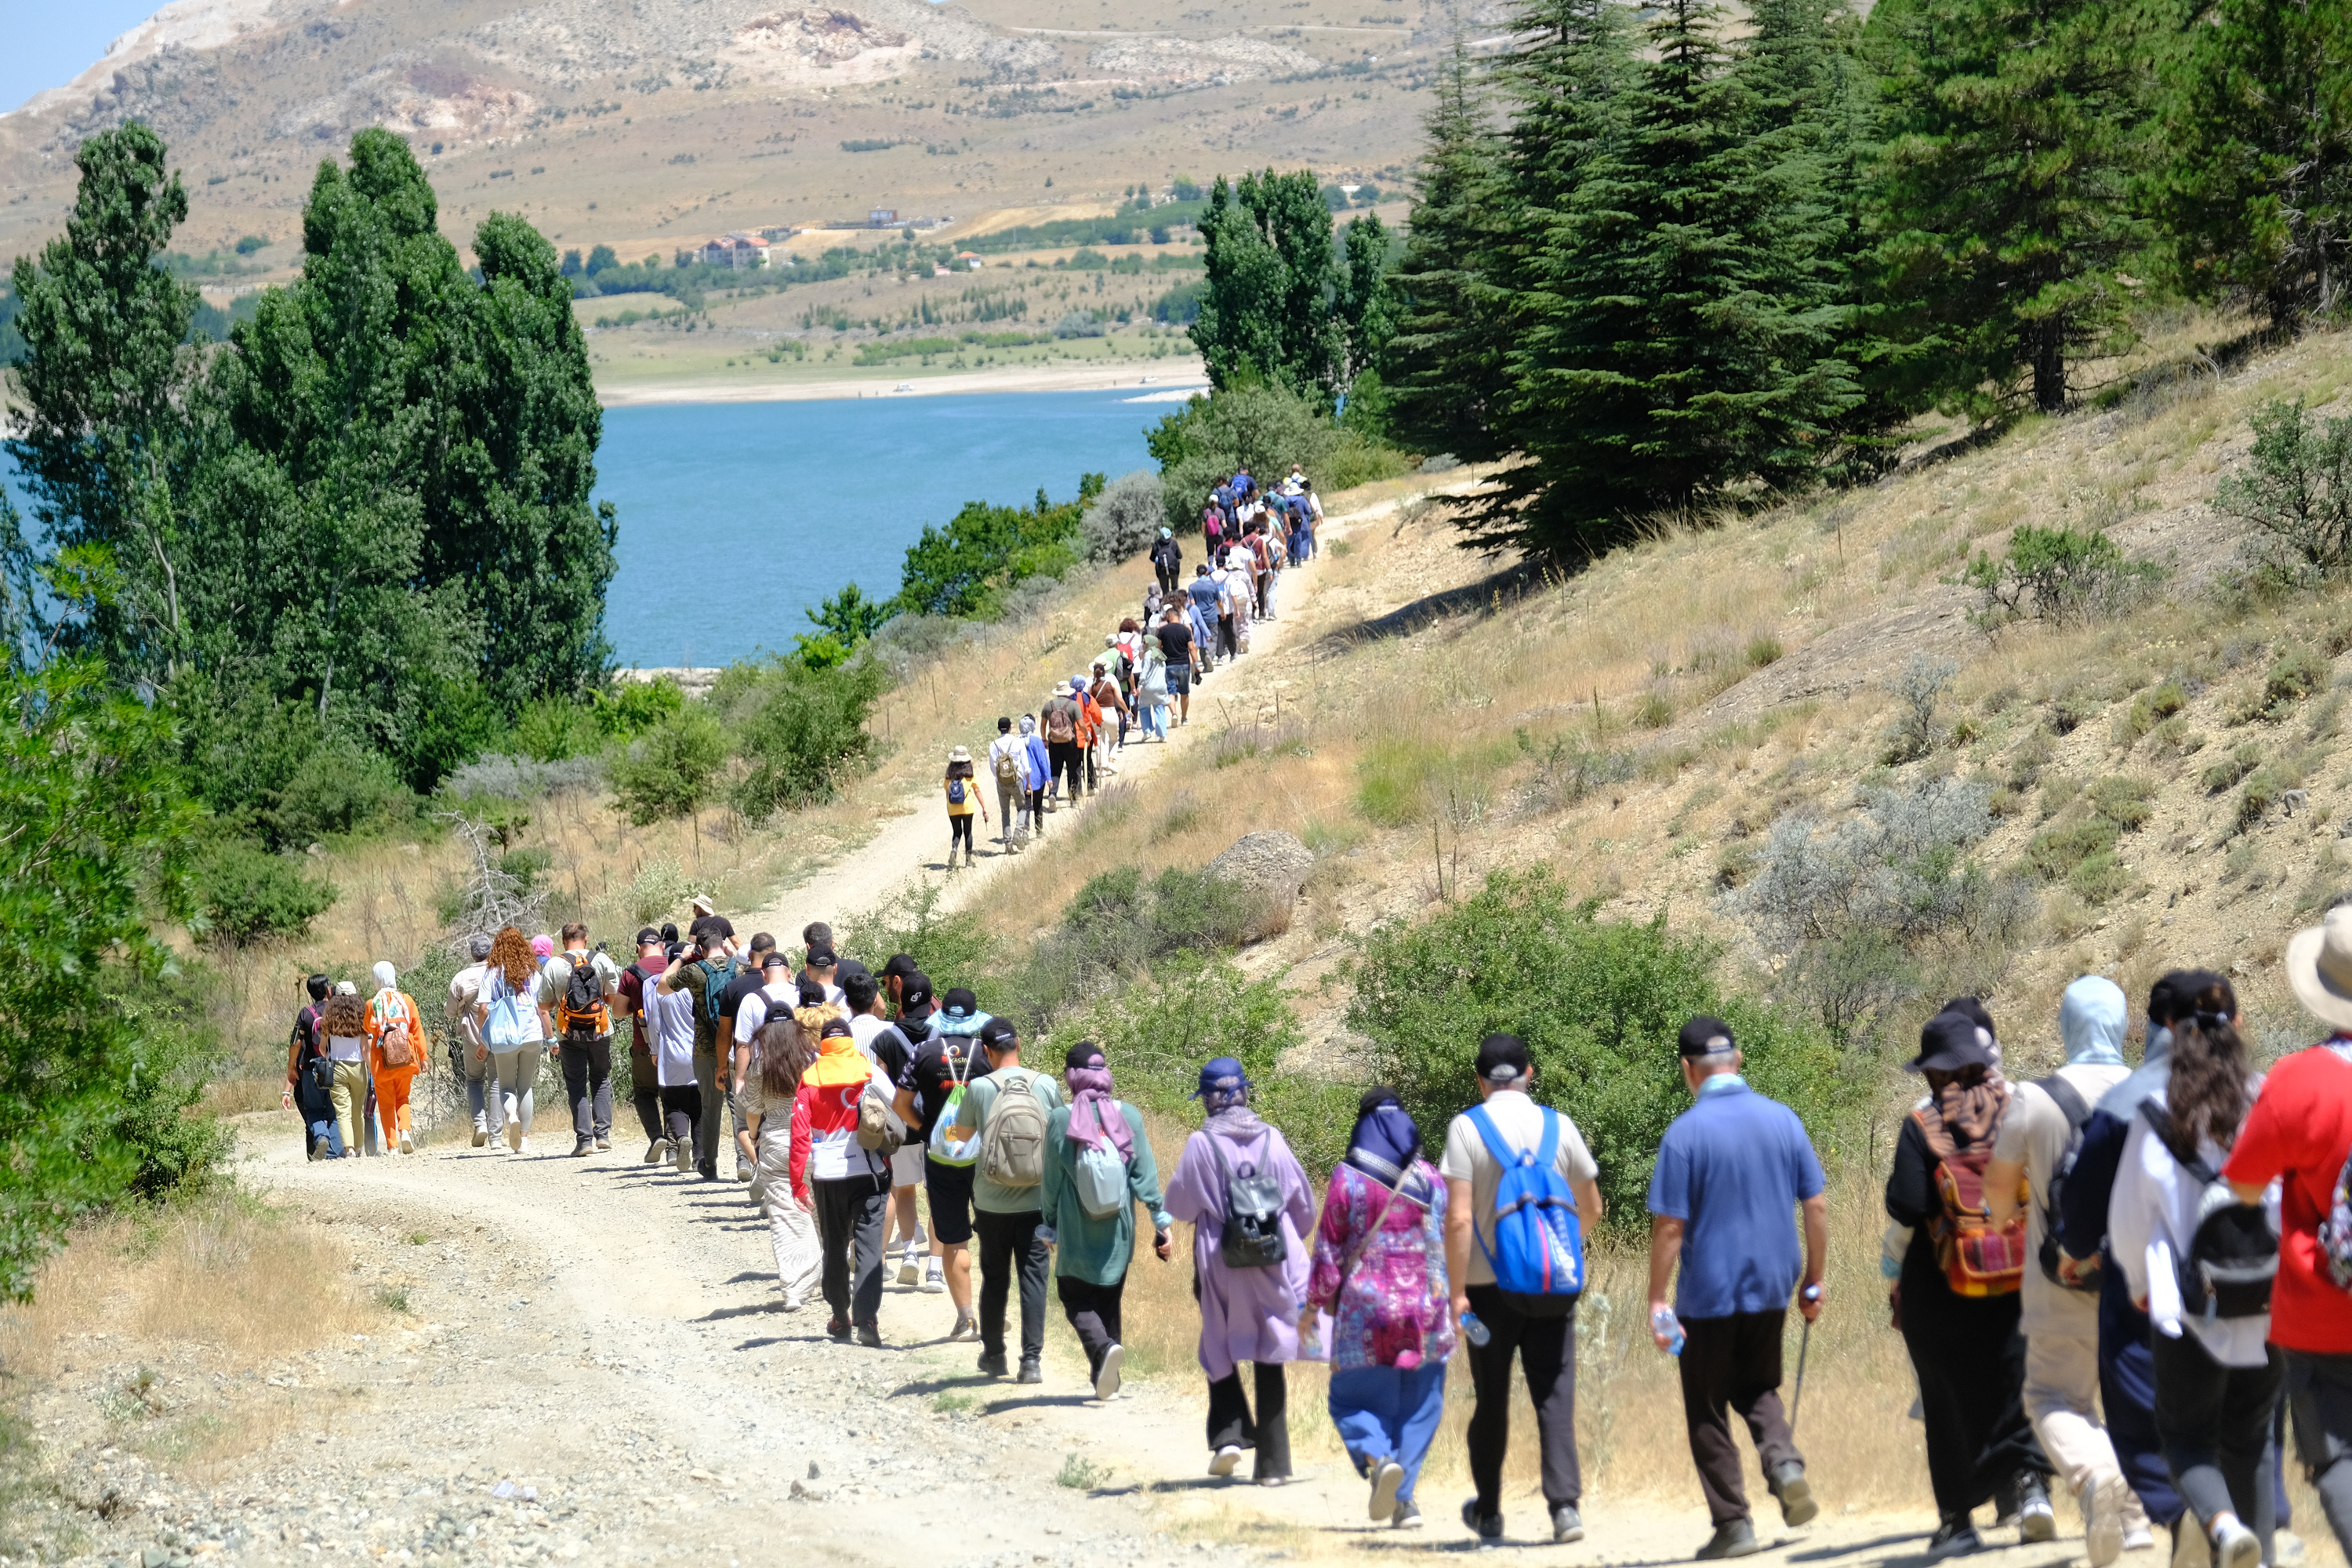 Doğaseverler için "Konya'da Yürüyoruz" temalı doğa yürüyüşleri devam ediyor